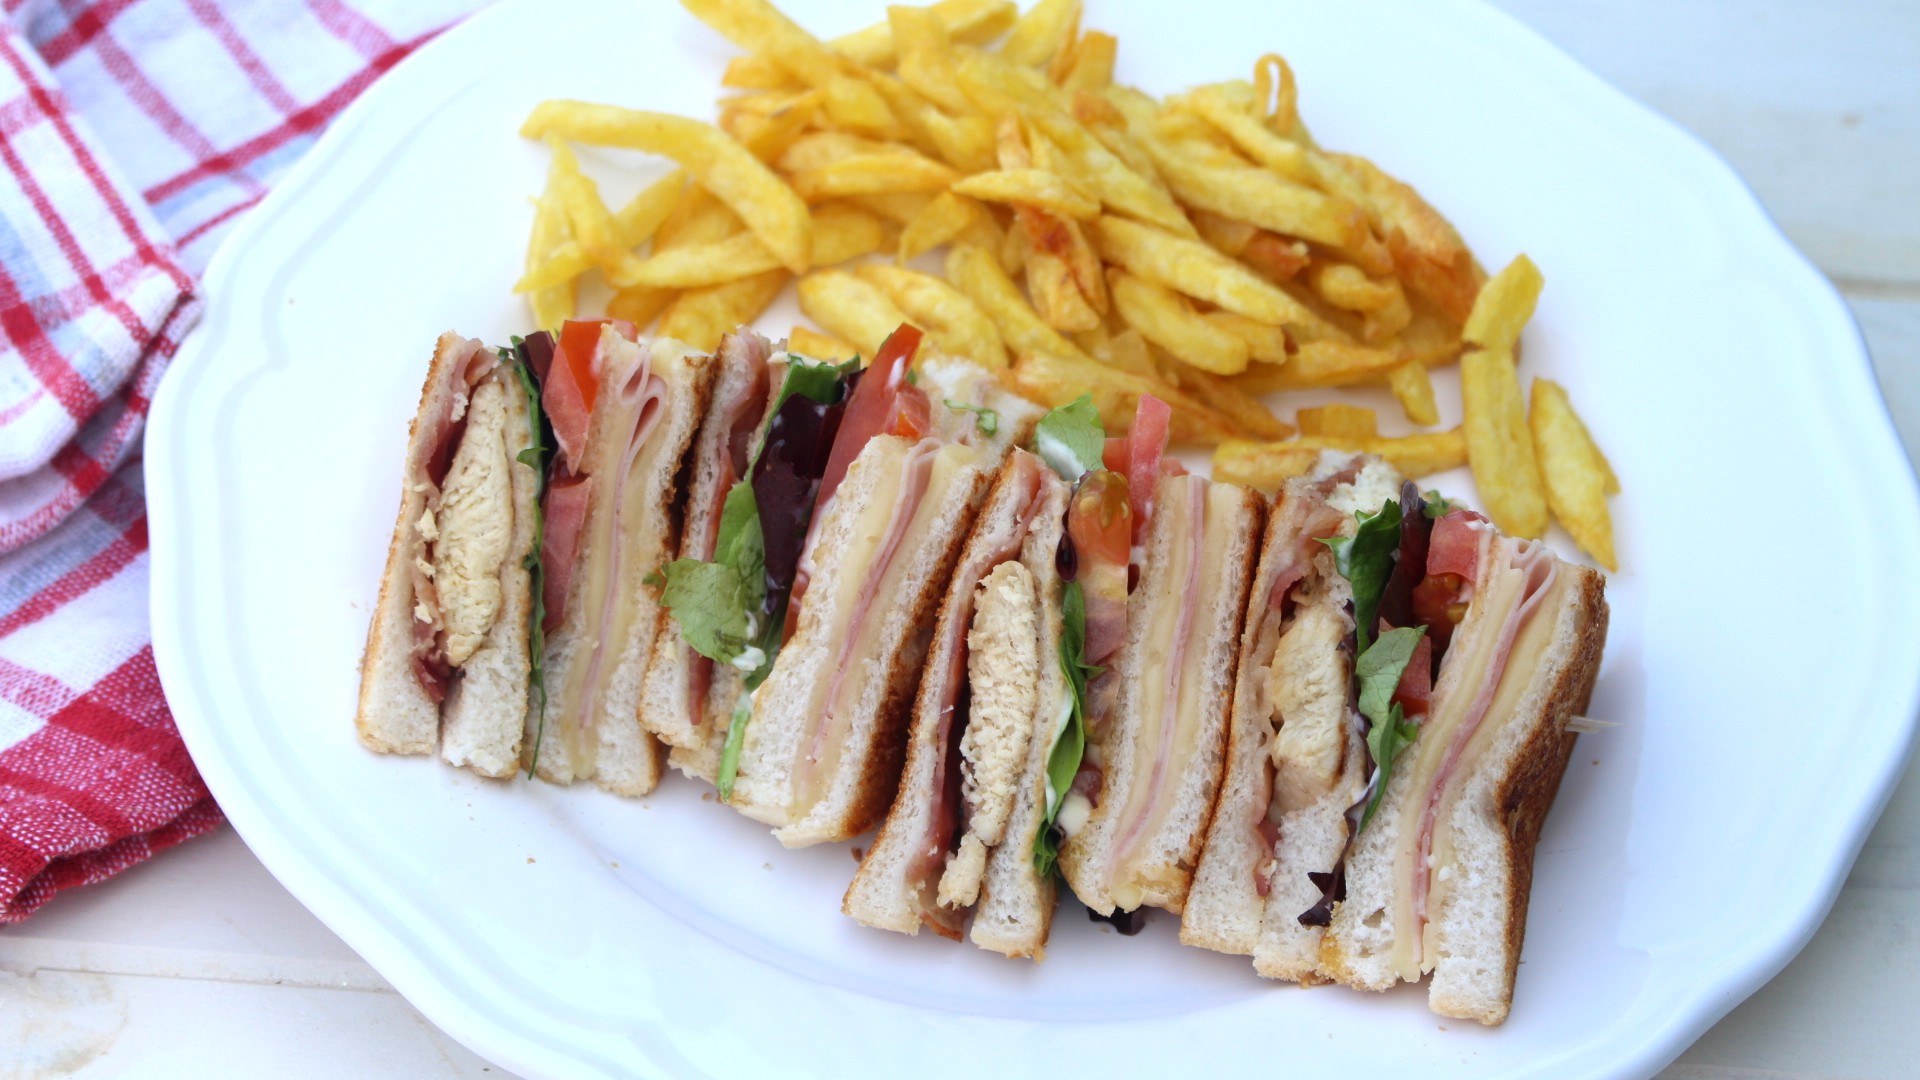 Sandwich club casero - El más famoso del VIPS - Saltando la dieta